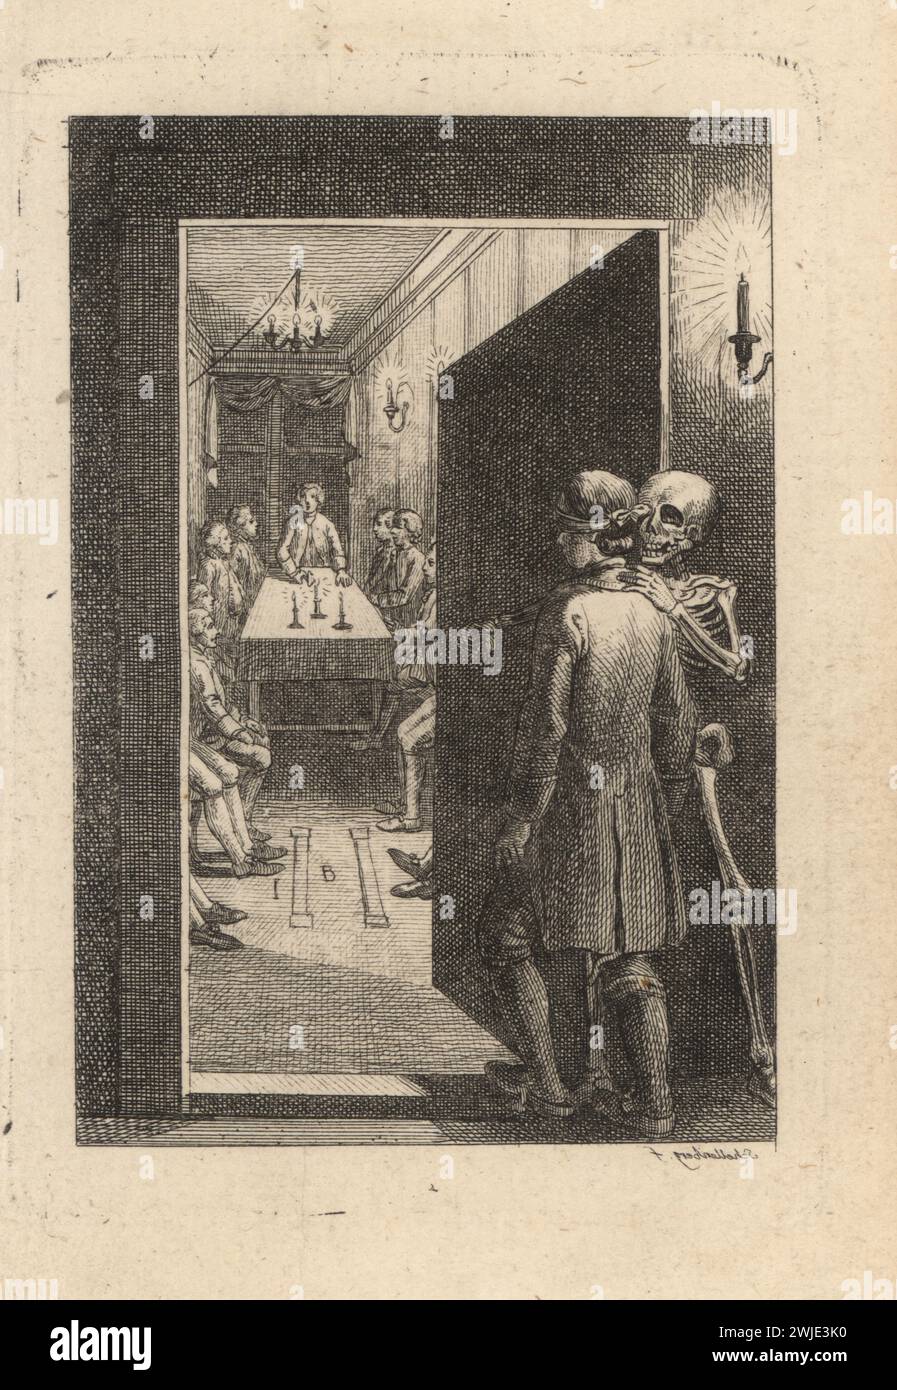 Le squelette de la mort guide un initié à une cérémonie dans une loge maçonnique du XVIIIe siècle. L'initié a les yeux bandés et entre dans une pièce avec de nombreux hommes assis autour d'une table avec des bougies. La loge maçonnique. Signature en écriture miroir. Die Loge der Verschwiegenheit. Gravure sur cuivre dessinée et gravée par Johann Rudolf Schellenberg de Freund Heins Erscheinungen de Johan Karl Musaus dans Holbeins Manier, (apparitions de la mort à la manière de Holbein), Heinrich Steiner, Winterthur, 1785. Banque D'Images